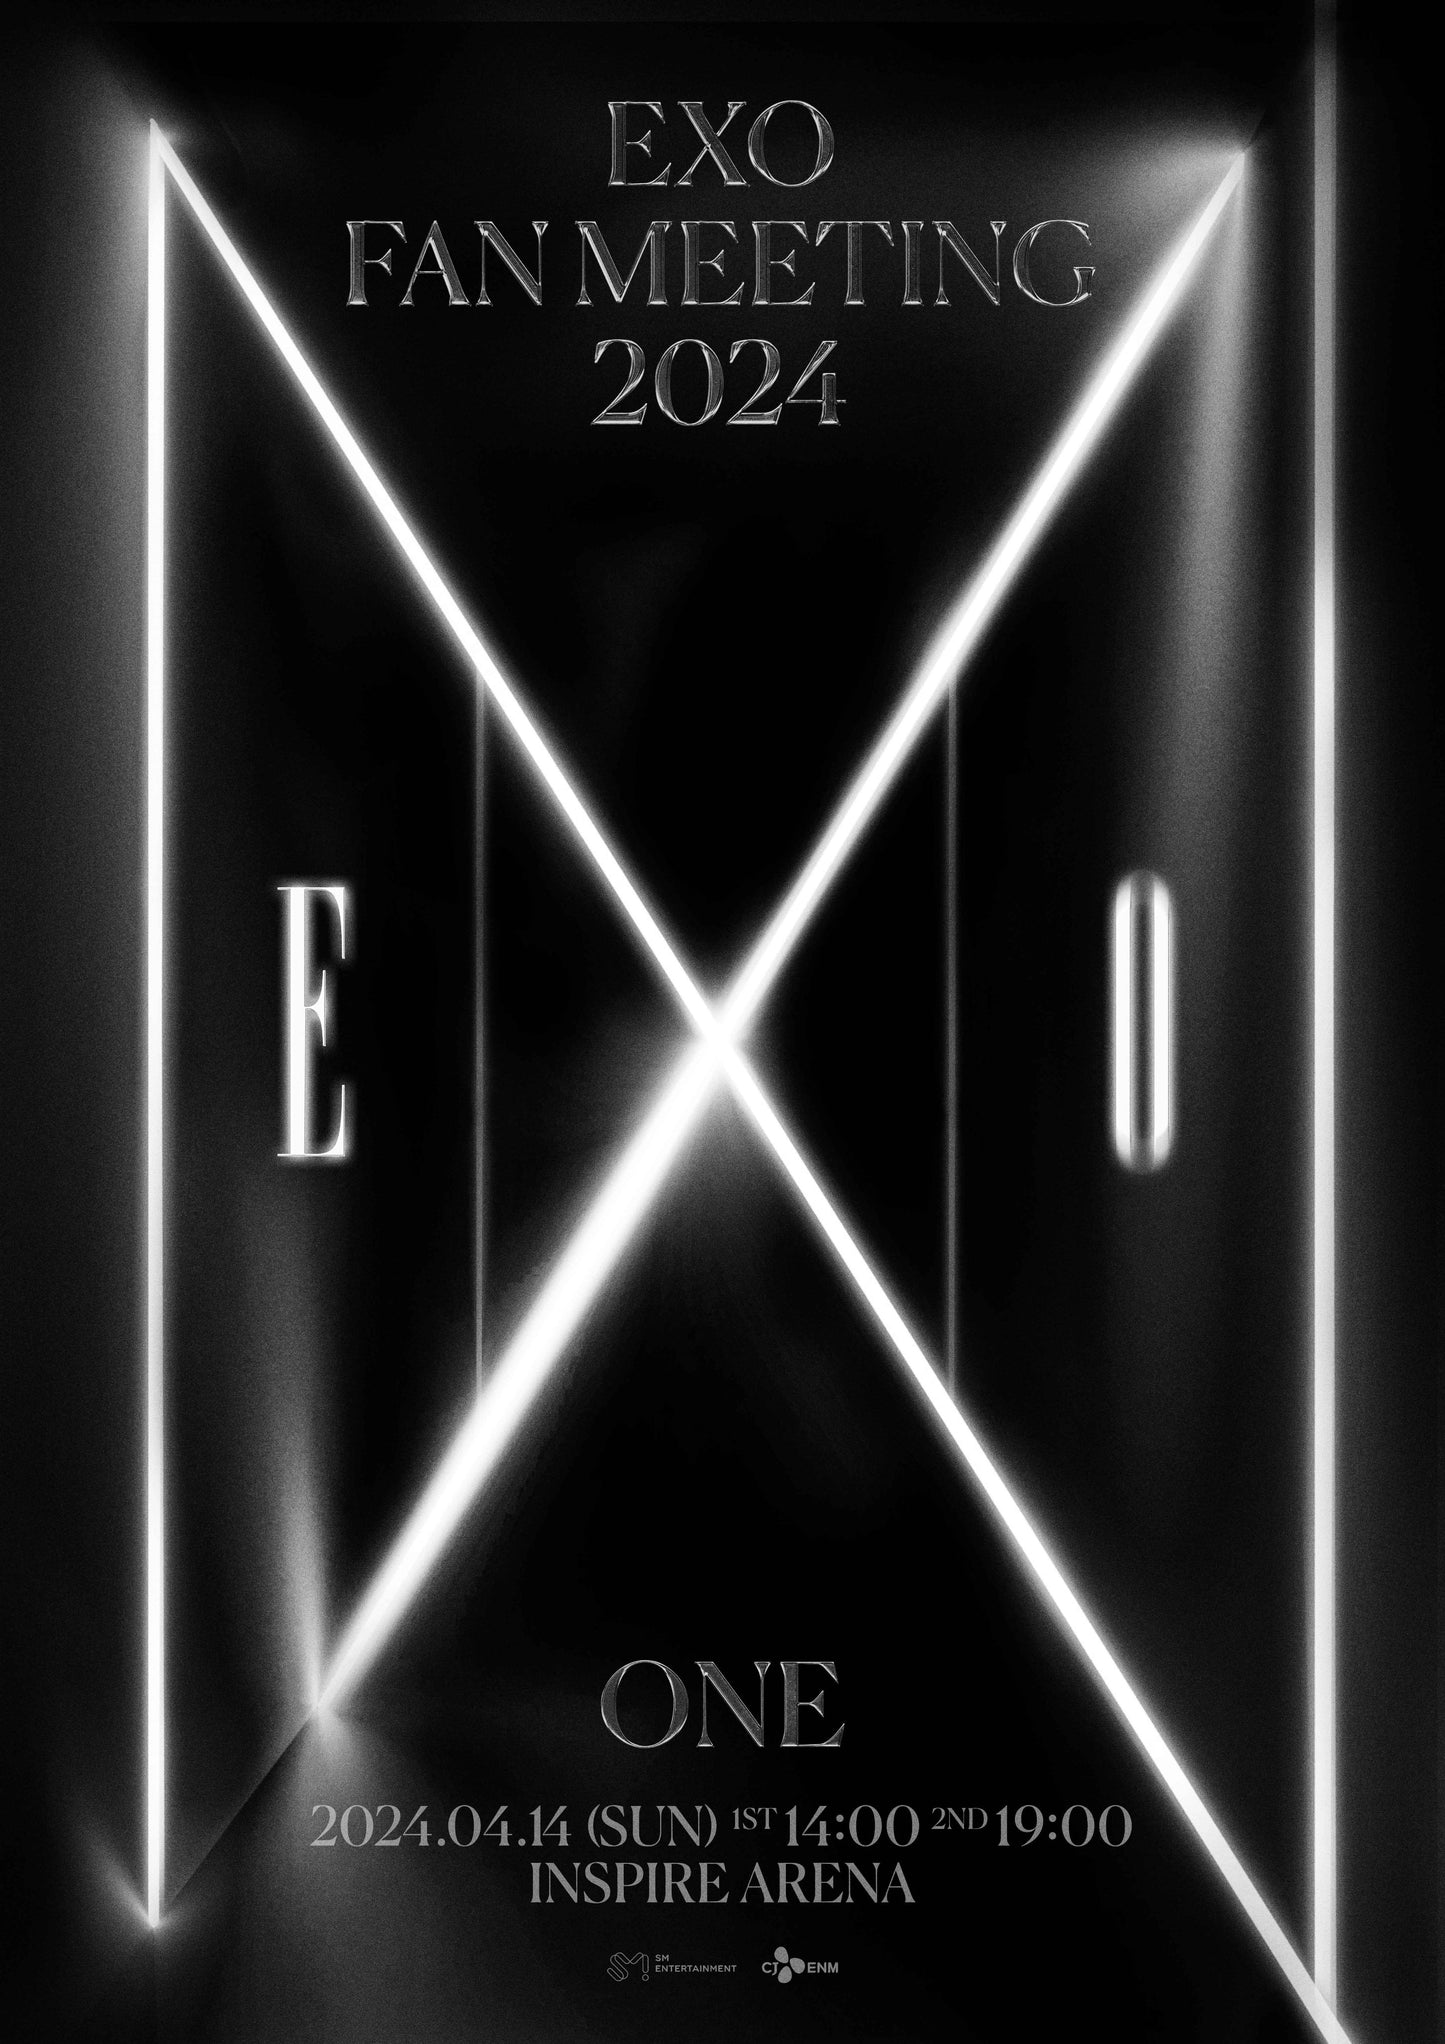 EXO "ONE" FAN MEETING LIVESTREAM (7PM KST) SLOT